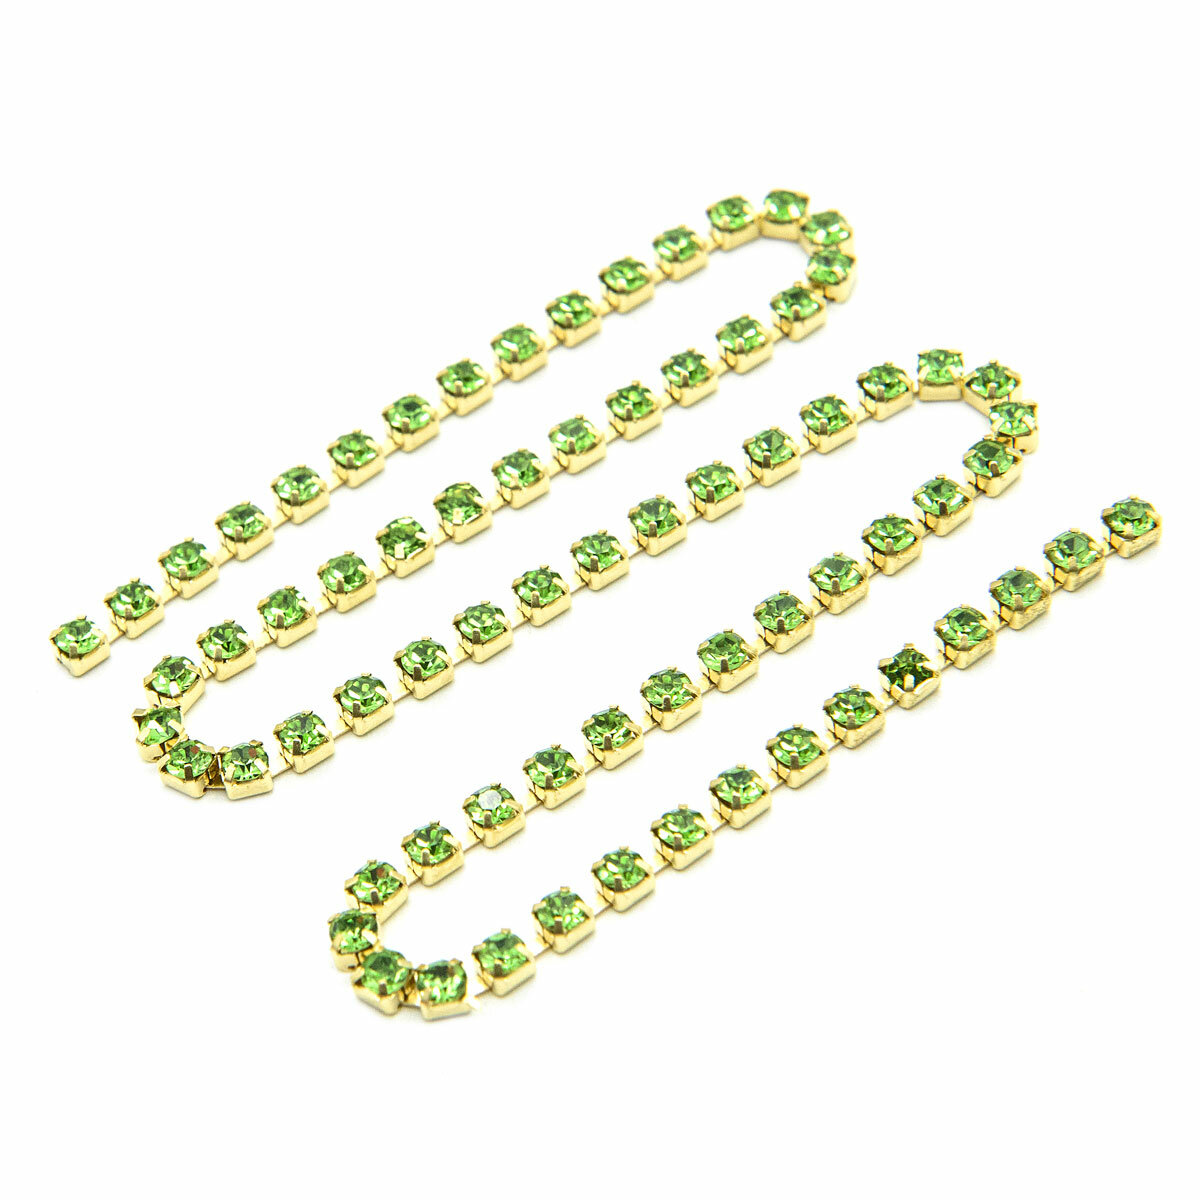 ЦС009ЗЦ3 Стразовые цепочки (золото), зеленый, размер 3 мм, 30 см/упак